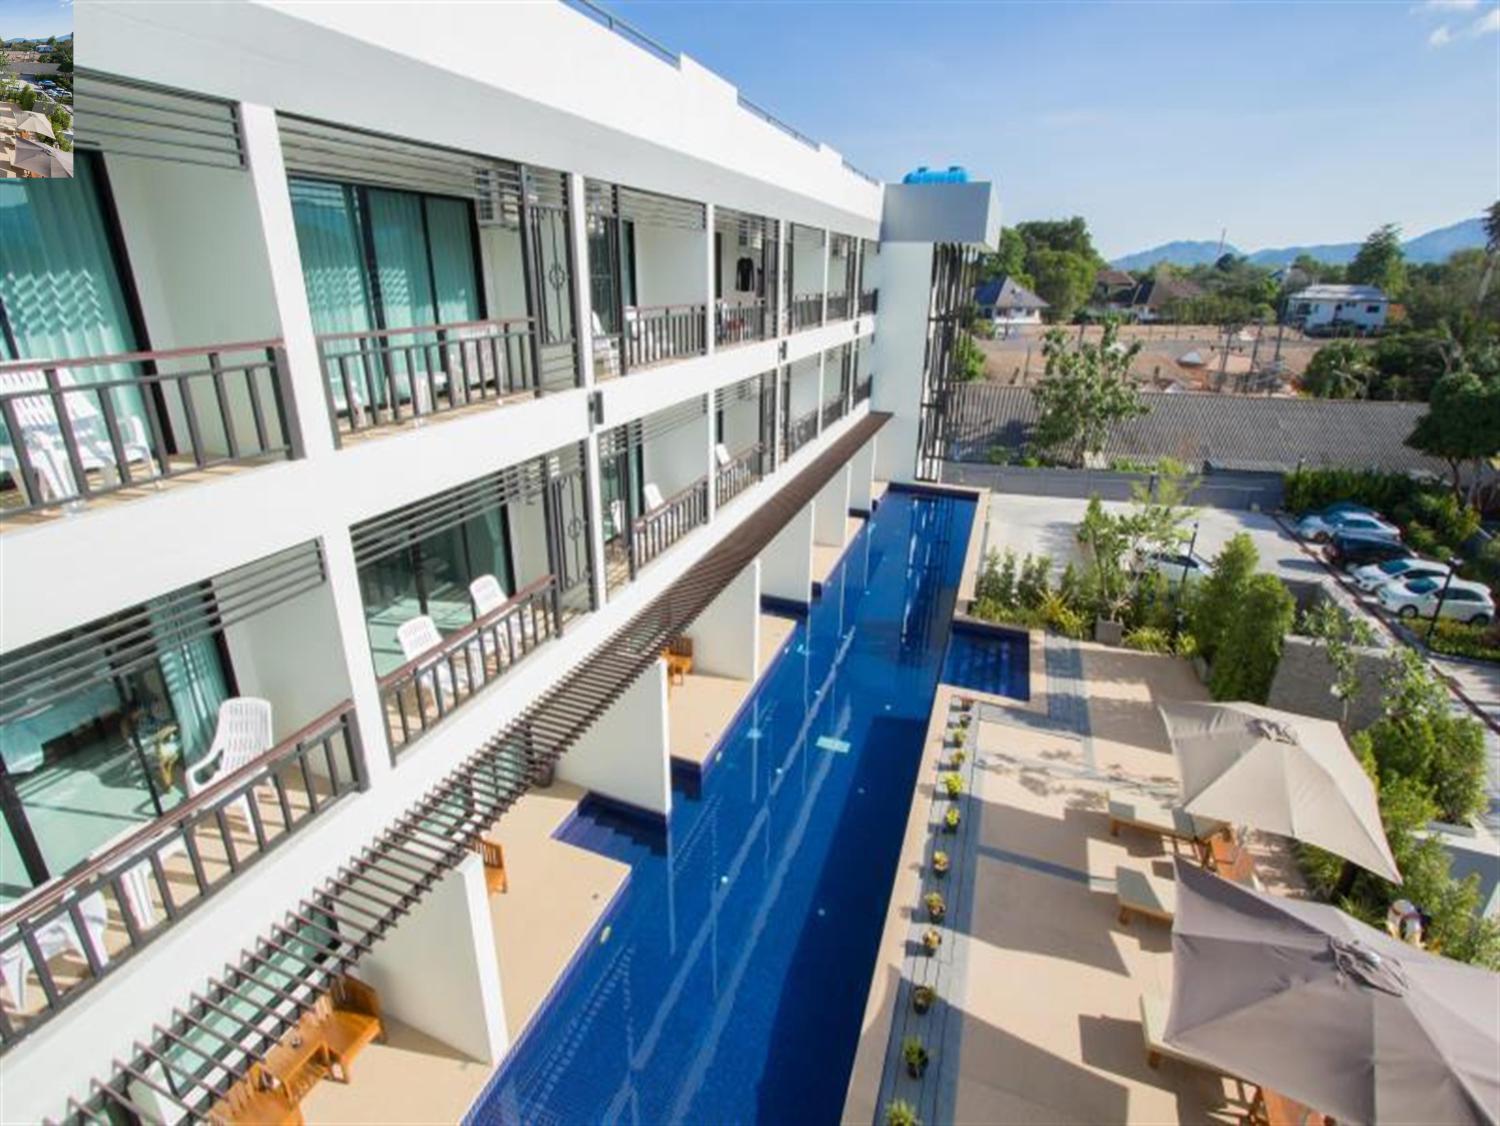 Baba House Phuket Hotel - Image 2